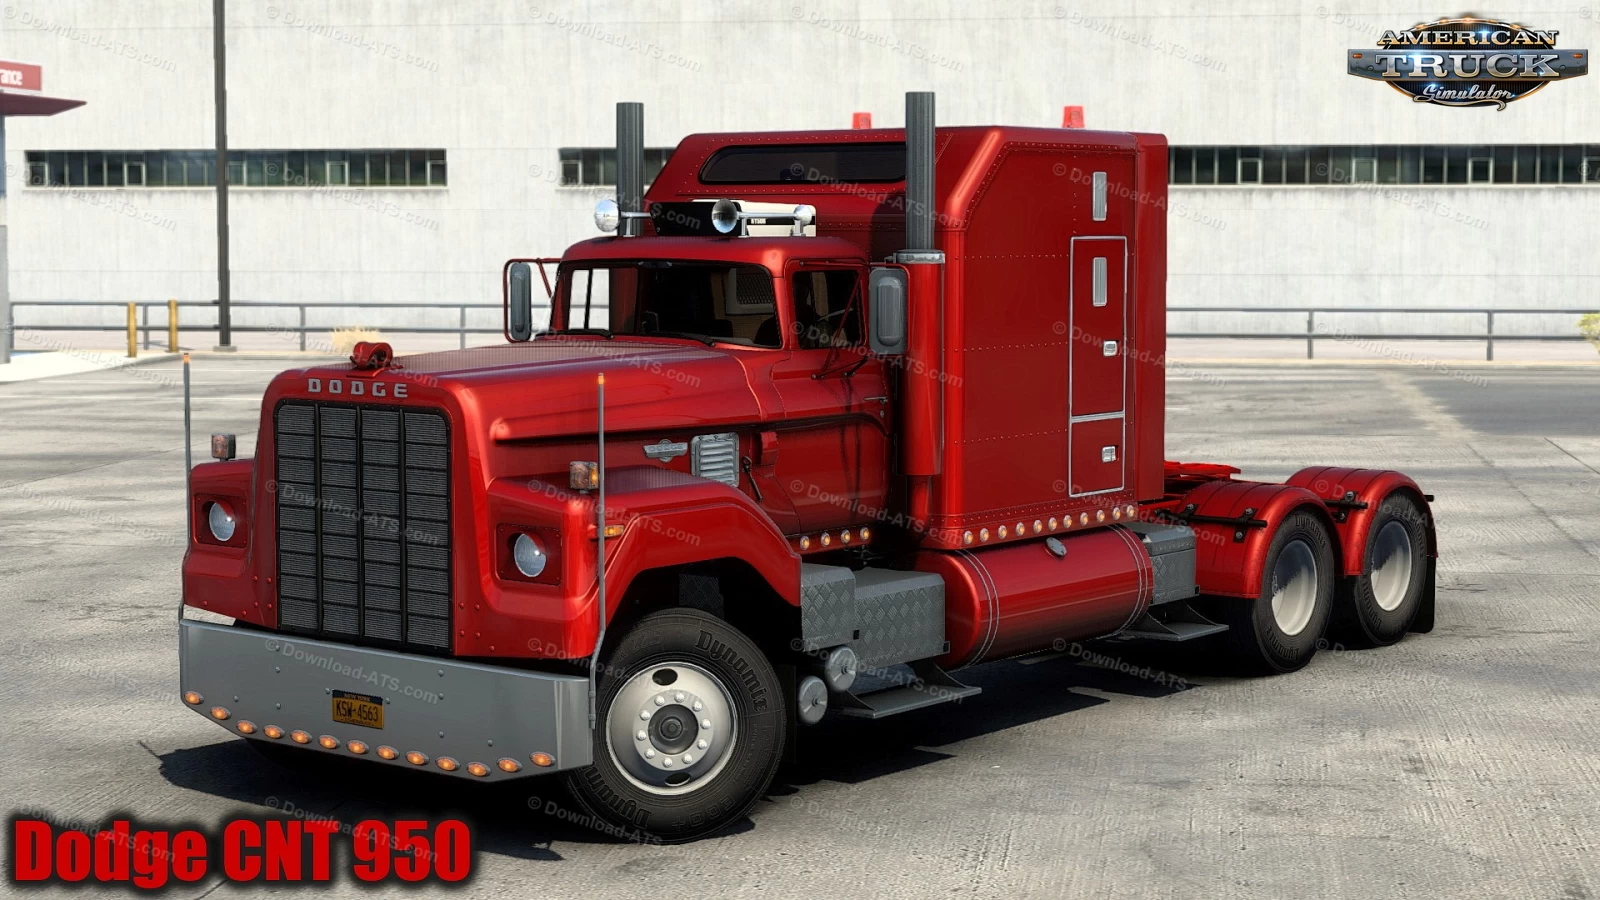 Dodge CNT 950 Truck + Interior v1.0 (1.43.x) for ATS